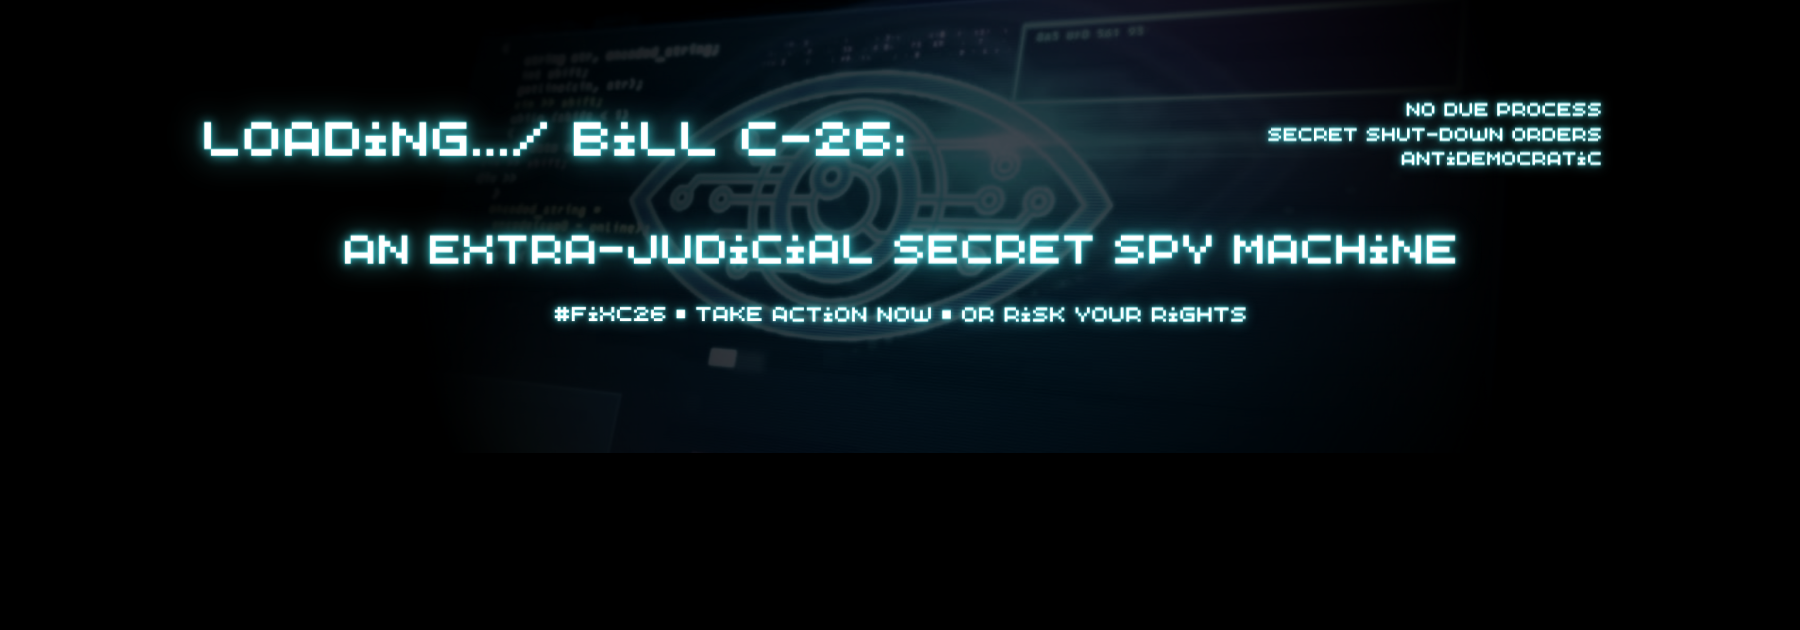 Bill C-26: an extra judicial secret spy machine